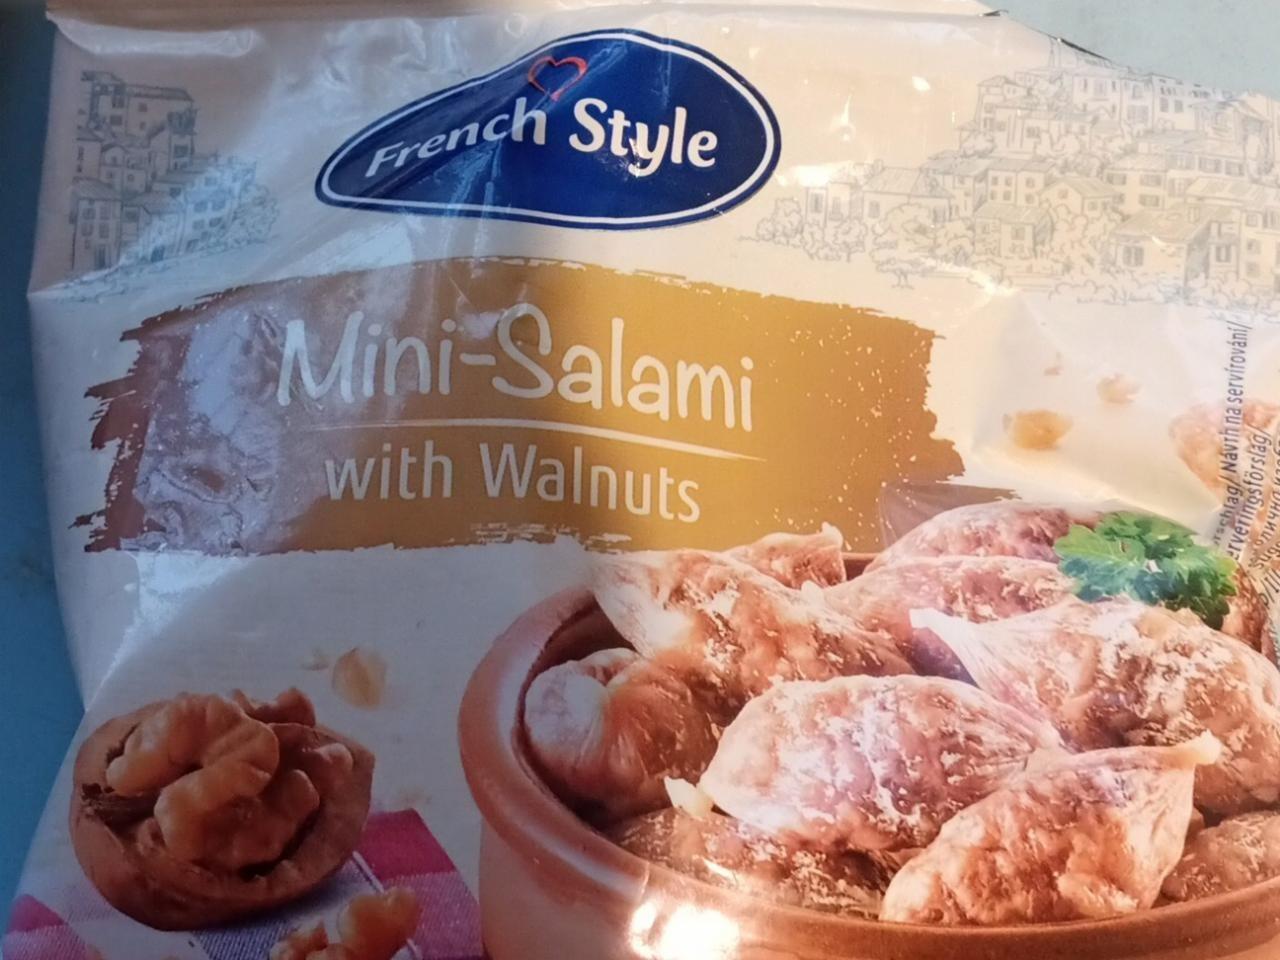 a kJ - Walnuts hodnoty with nutriční kalorie, French Mini-Salami style